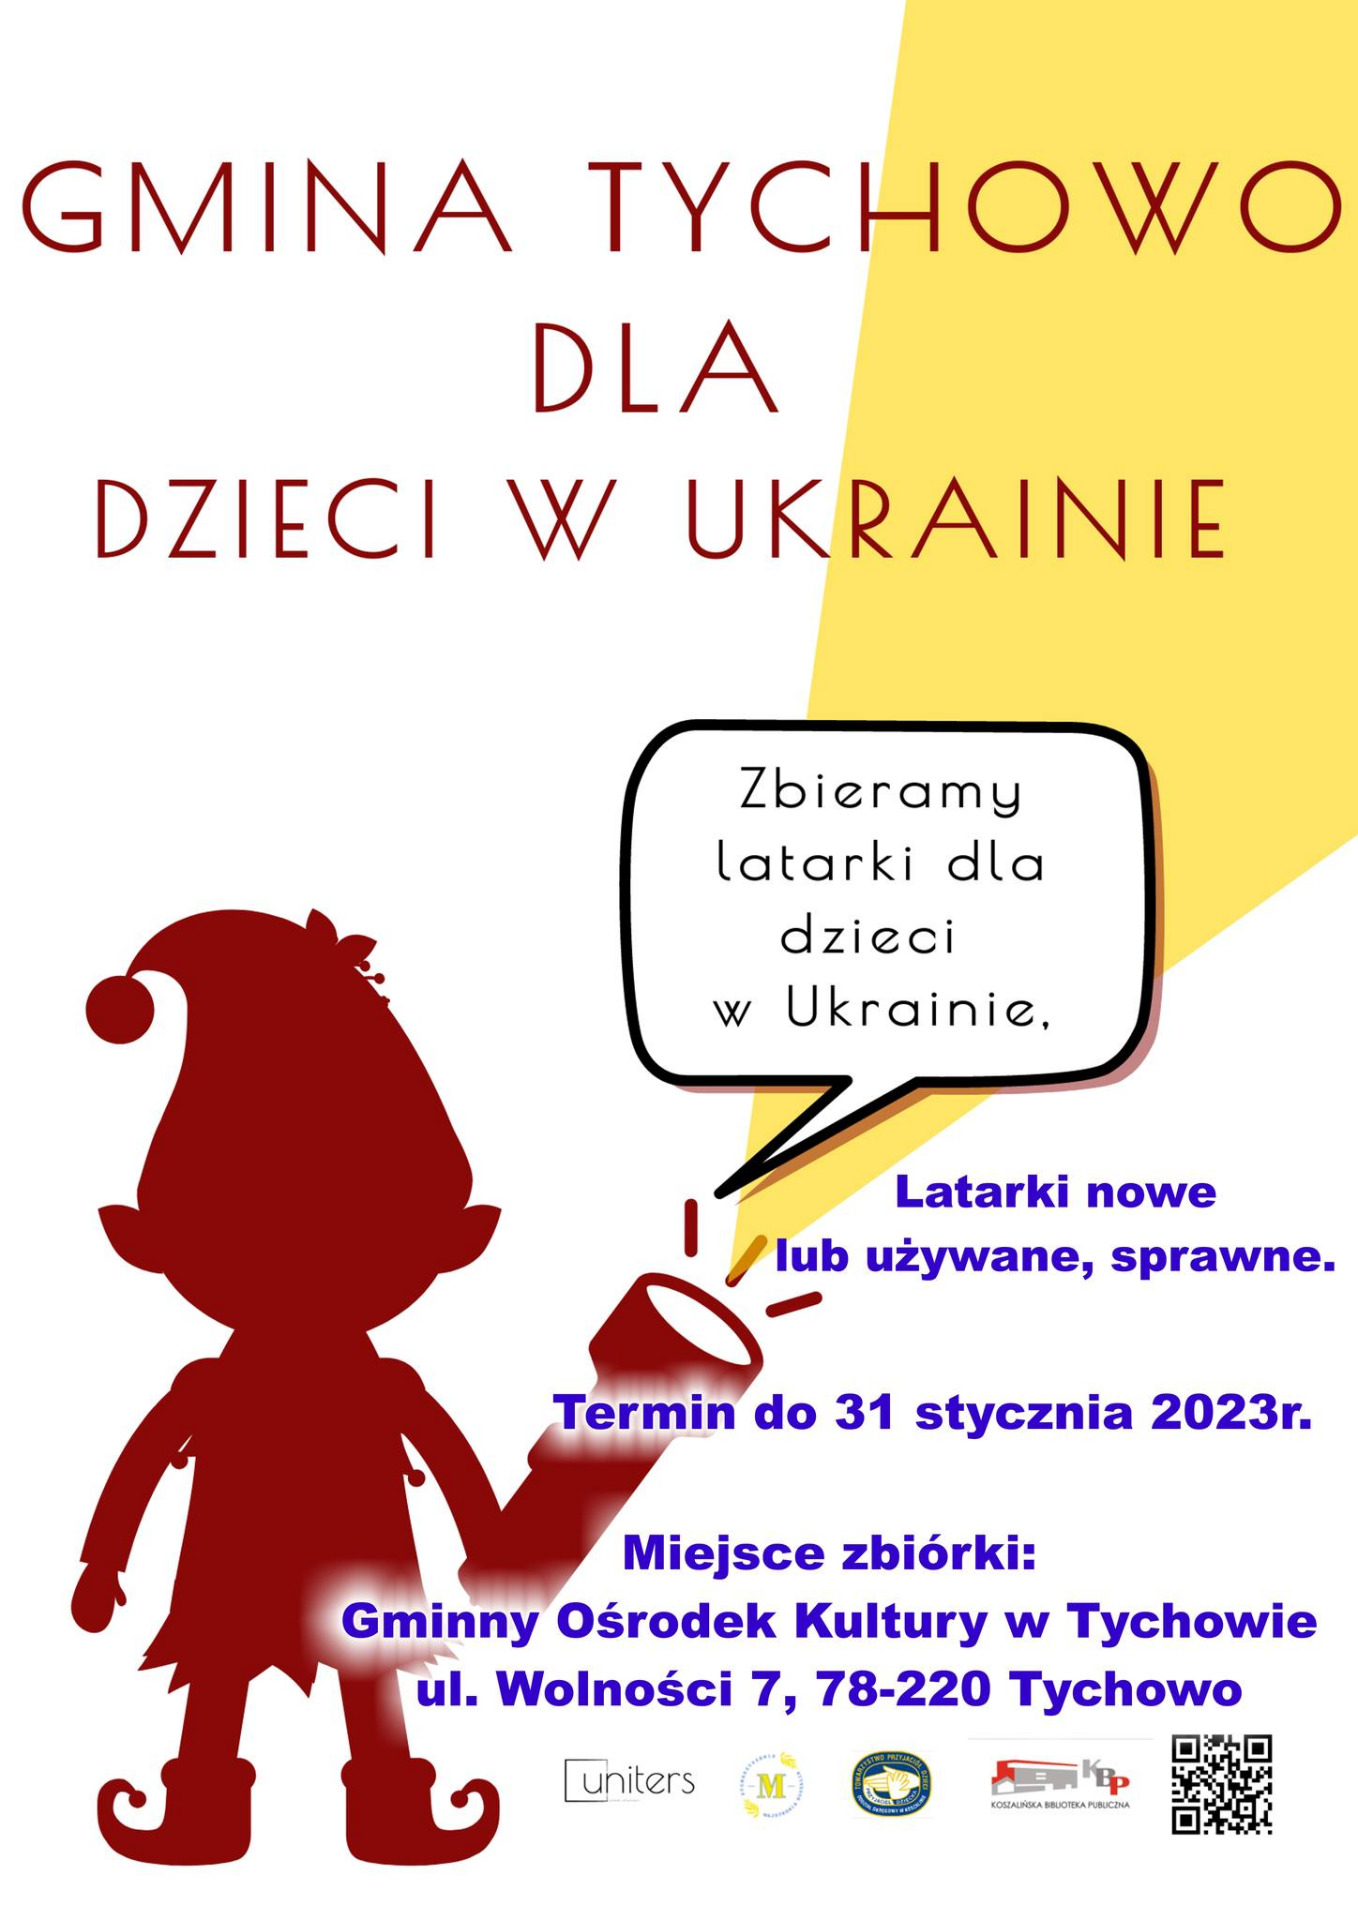 Plakat informujący o zbiórce latarek dla dzieci z Ukrainy